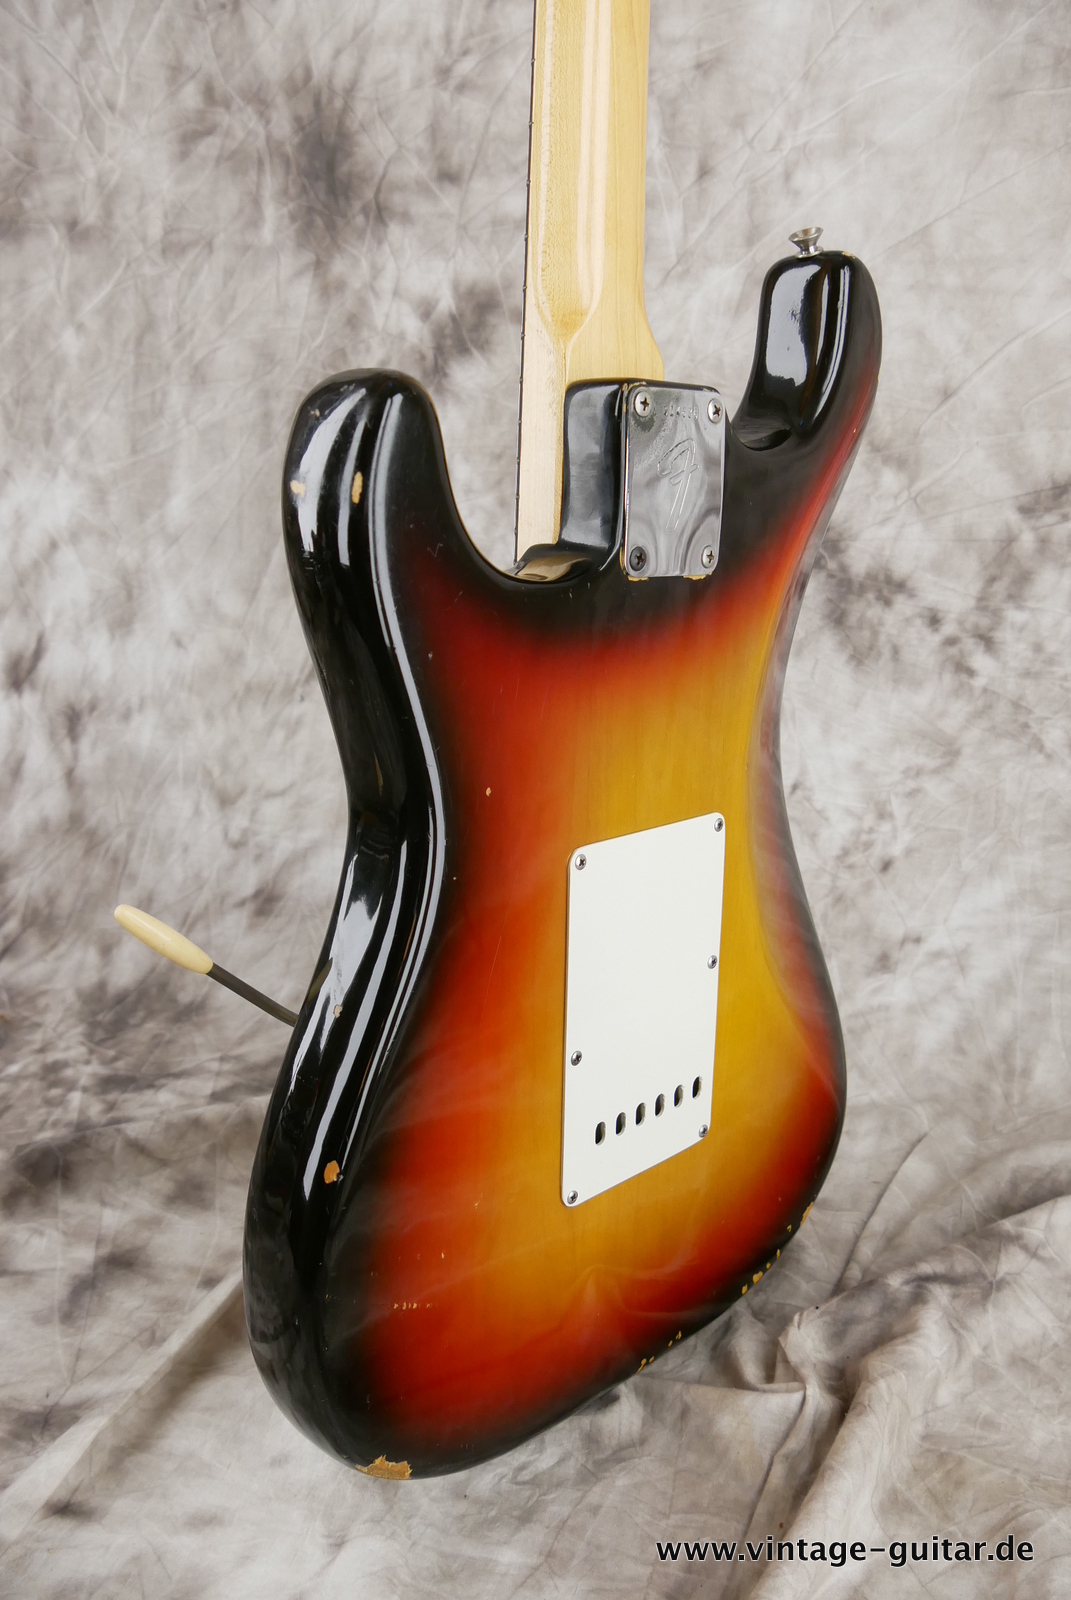 Fender-Stratocaster-1971-sunburst-4-hole-007.JPG